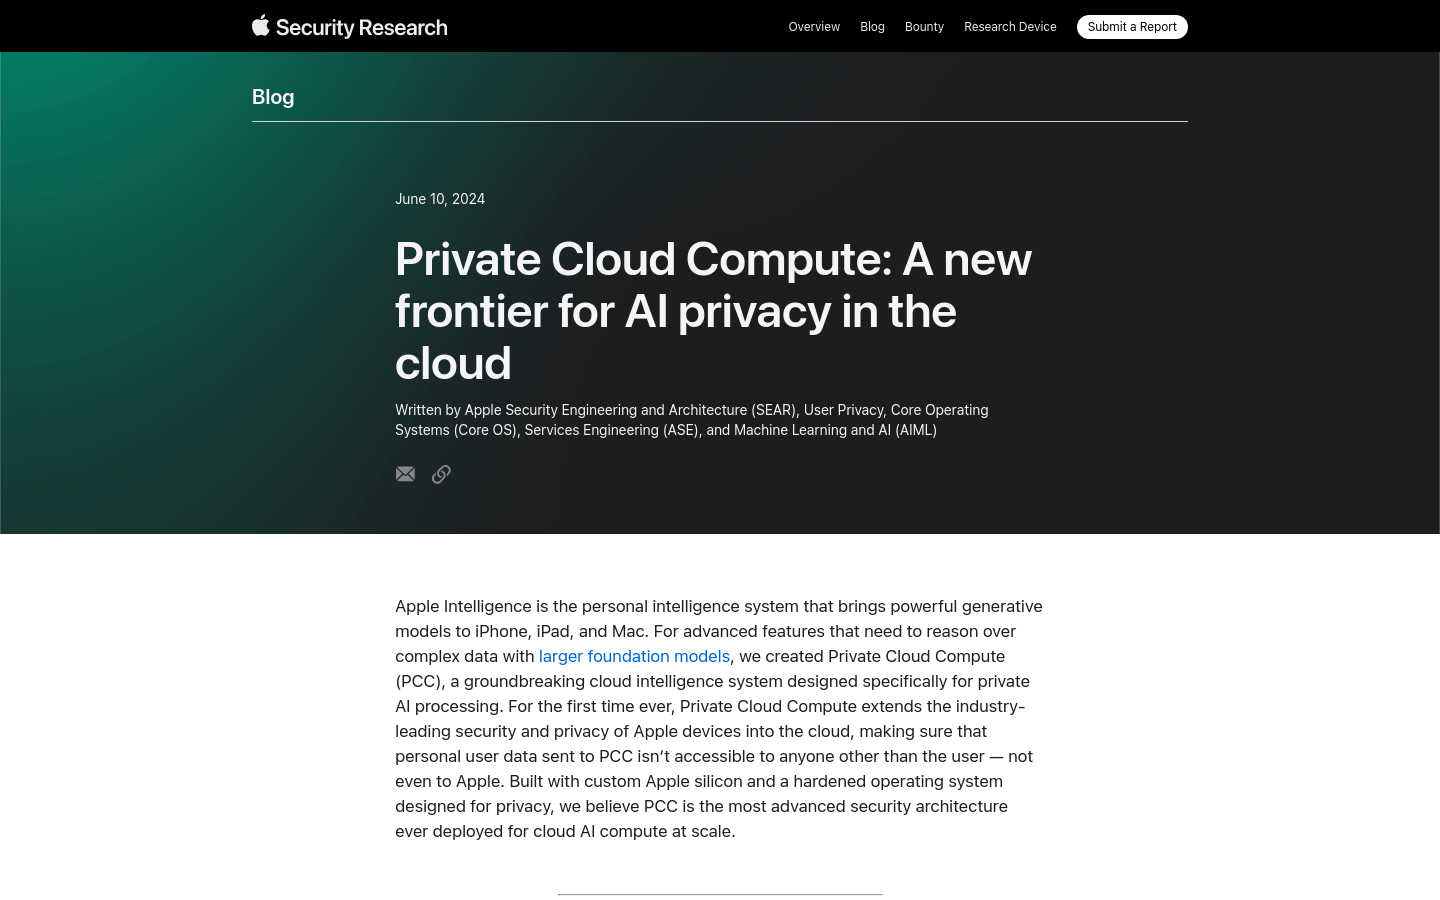 Private Cloud Compute